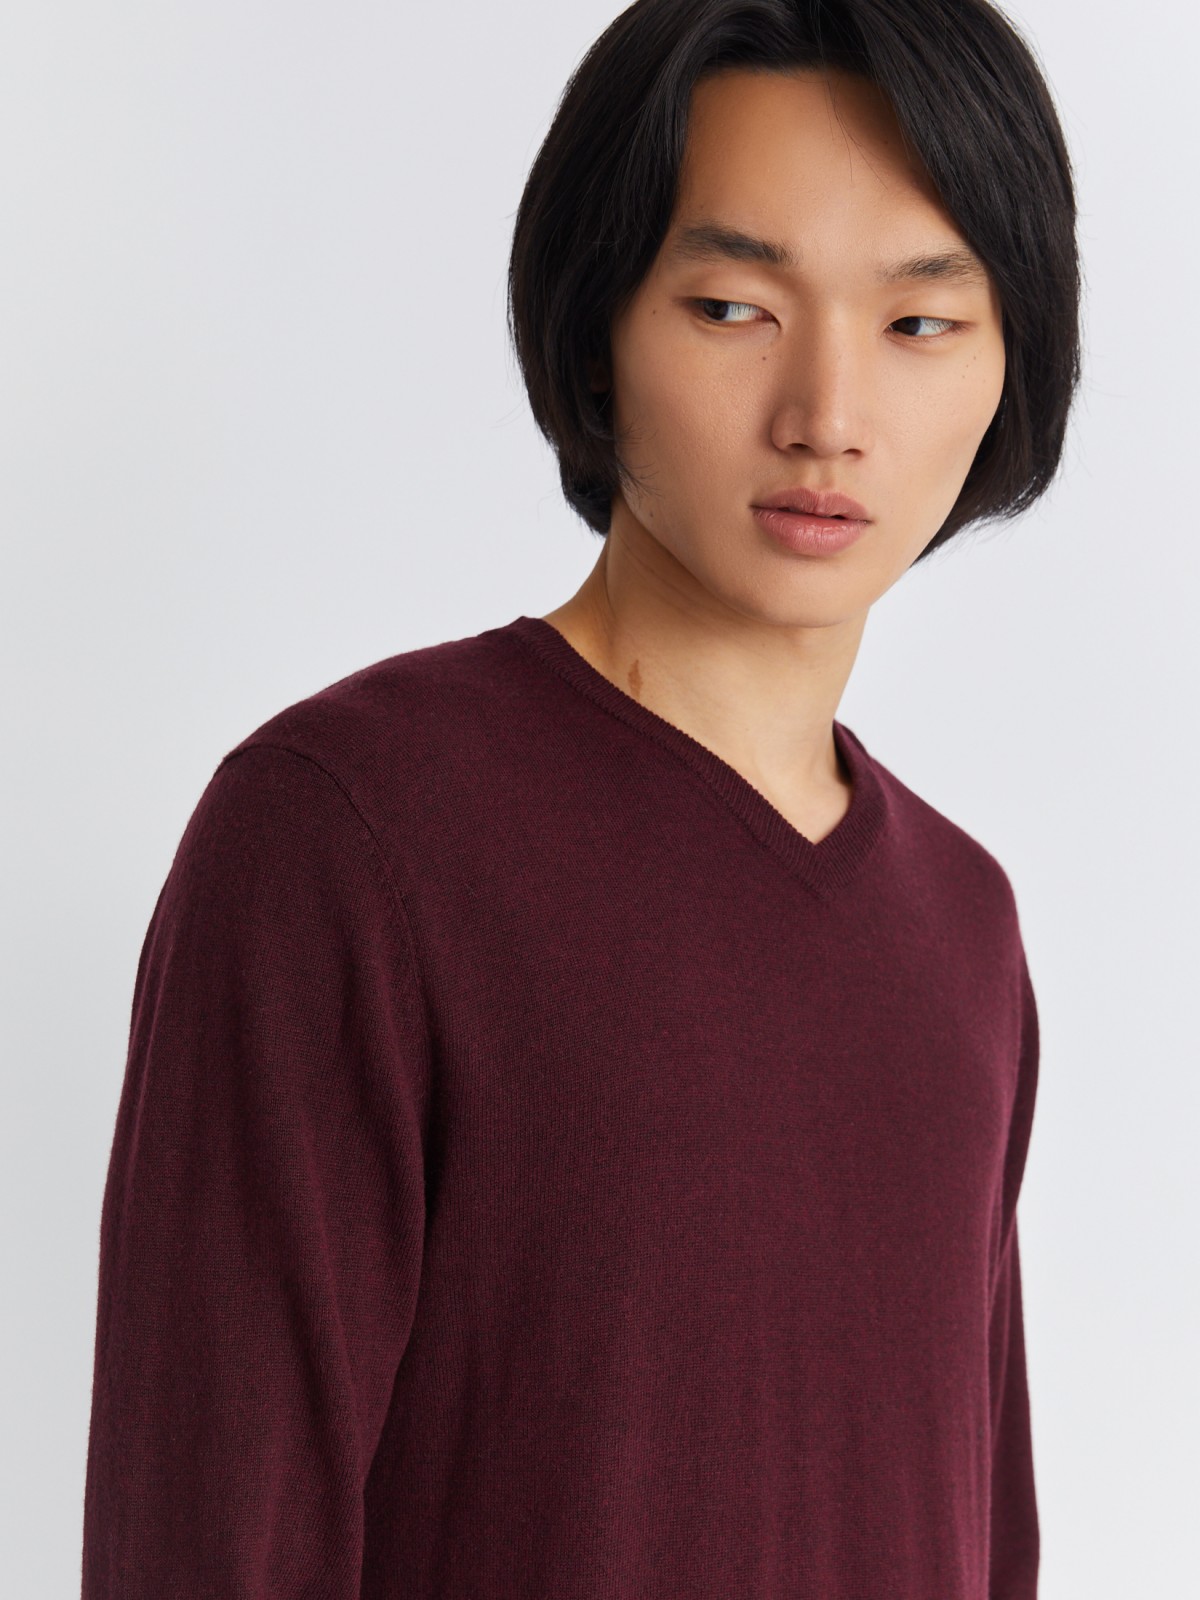 Шерстяной трикотажный пуловер с треугольным вырезом и длинным рукавом zolla 013346163042, цвет бордо, размер M - фото 4